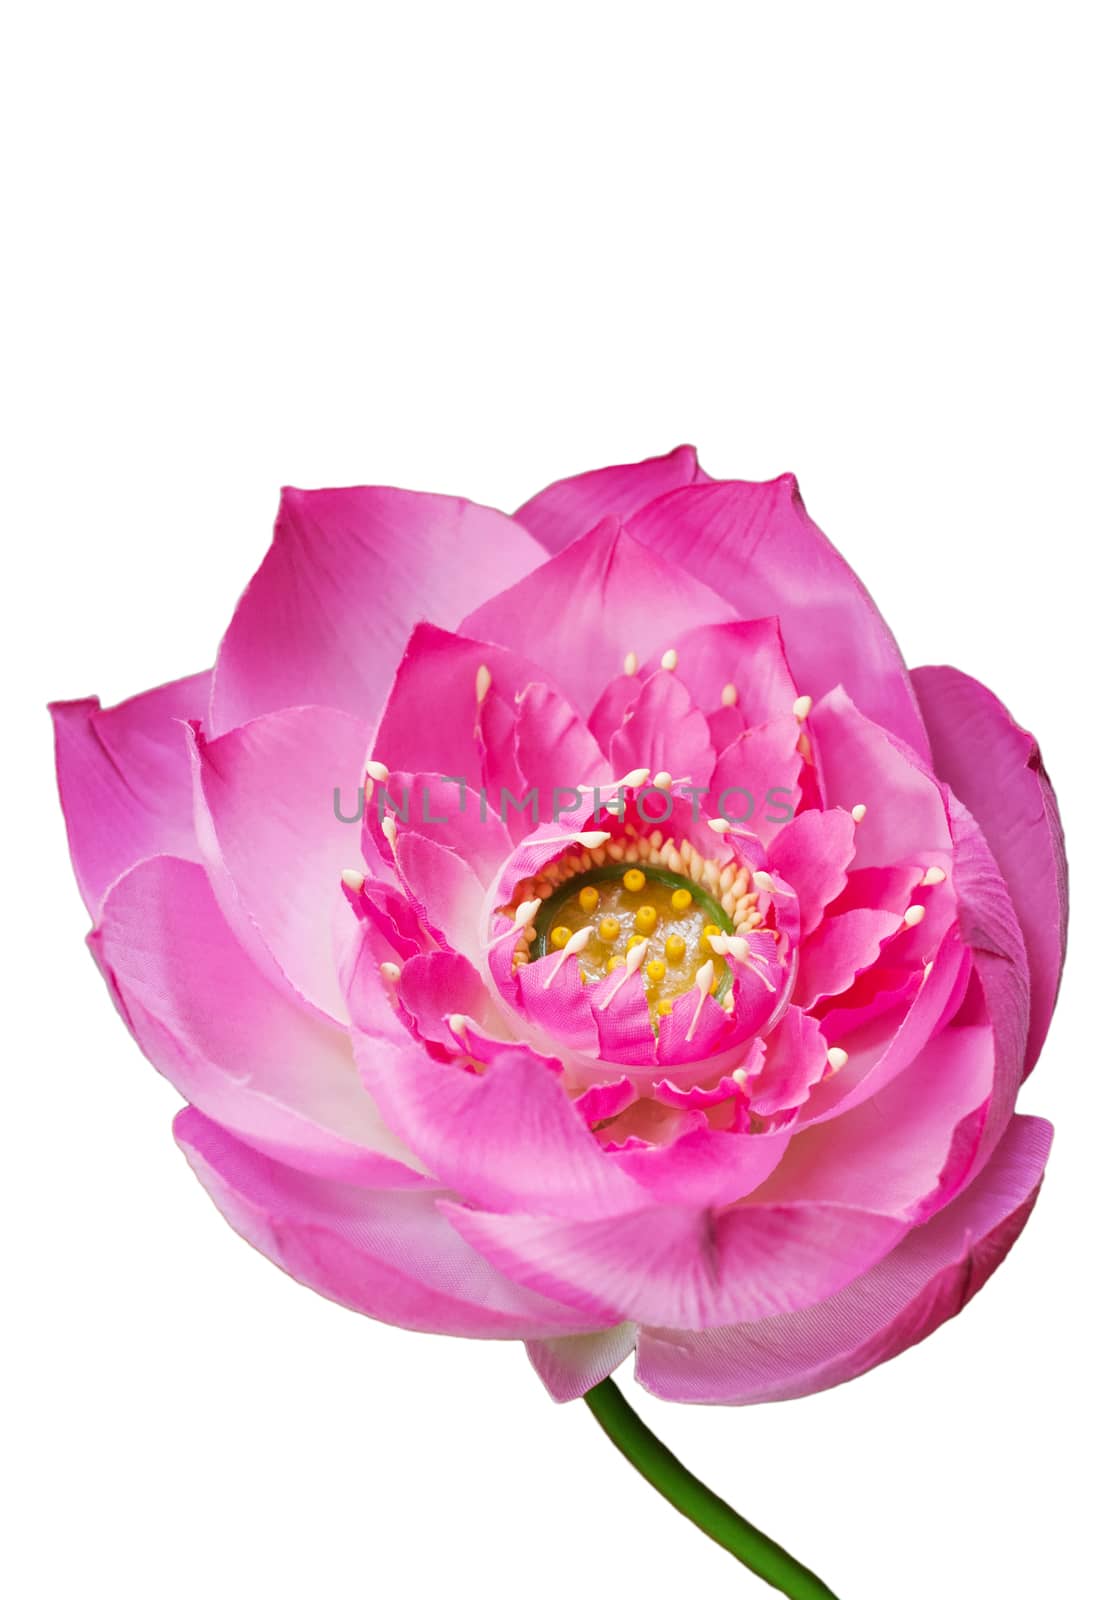 Lotus, Pink water lily flower (lotus) by jimbophoto